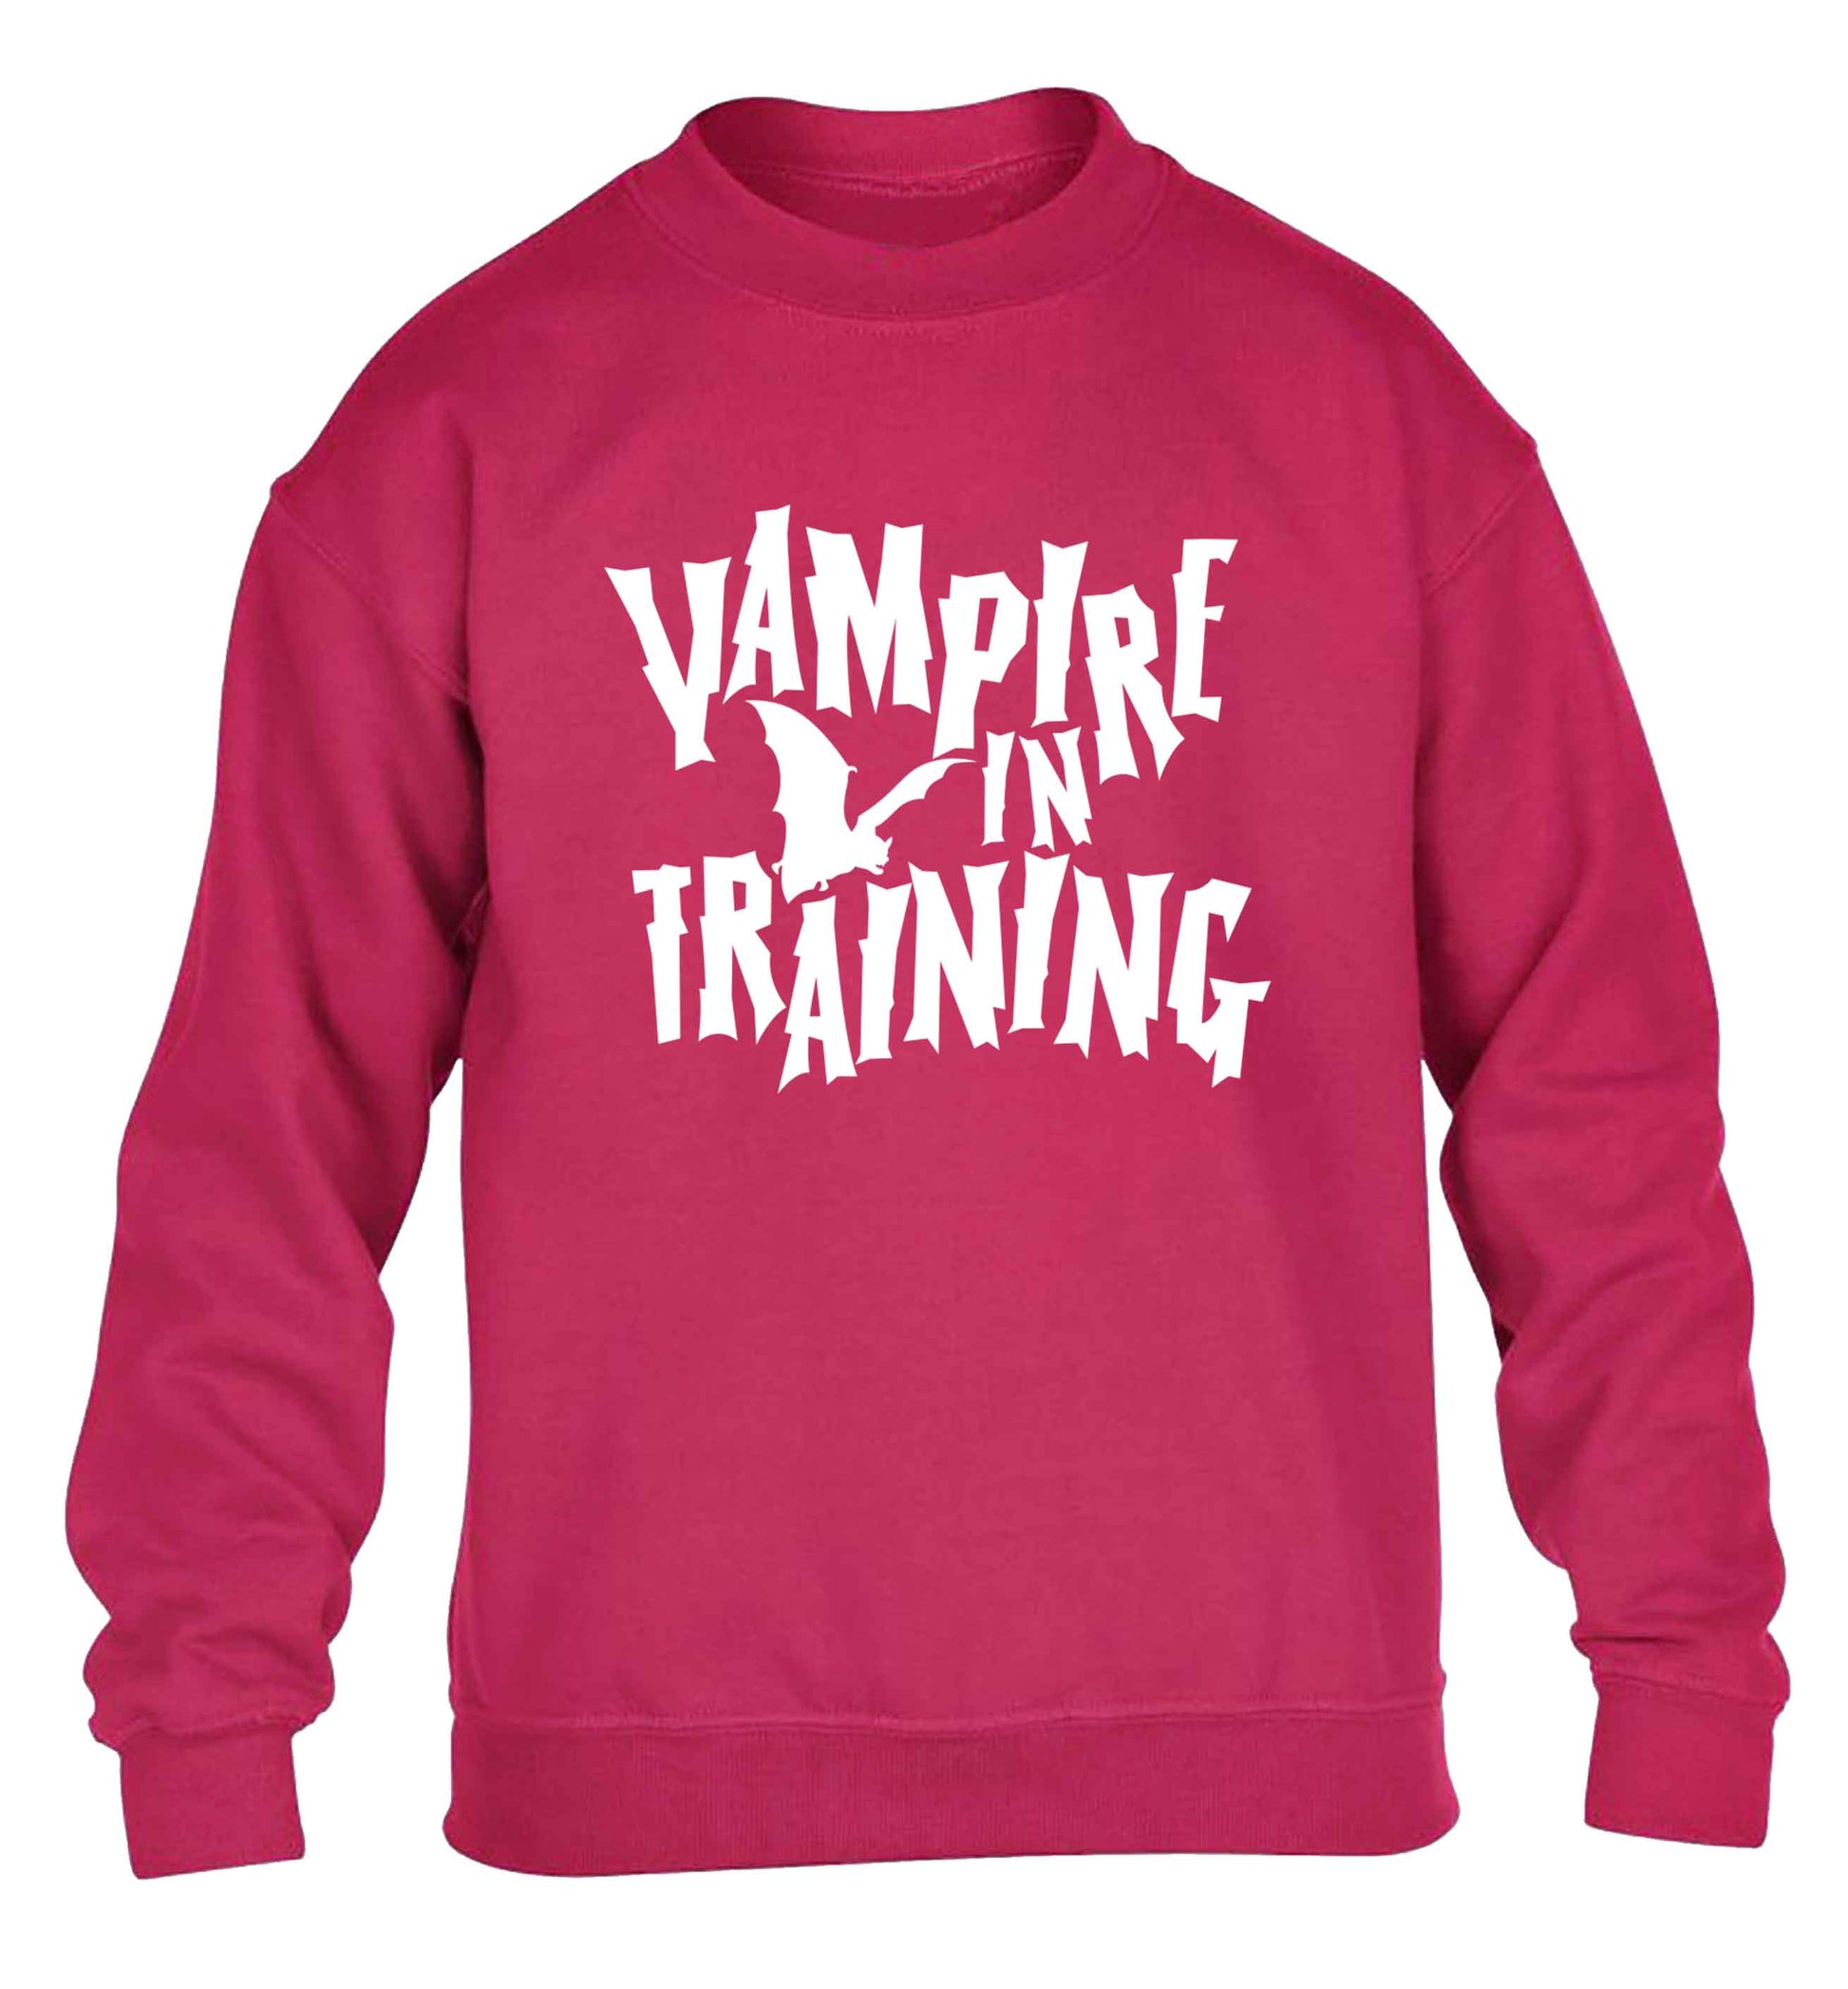 Vampire in training children's pink sweater 12-13 Years